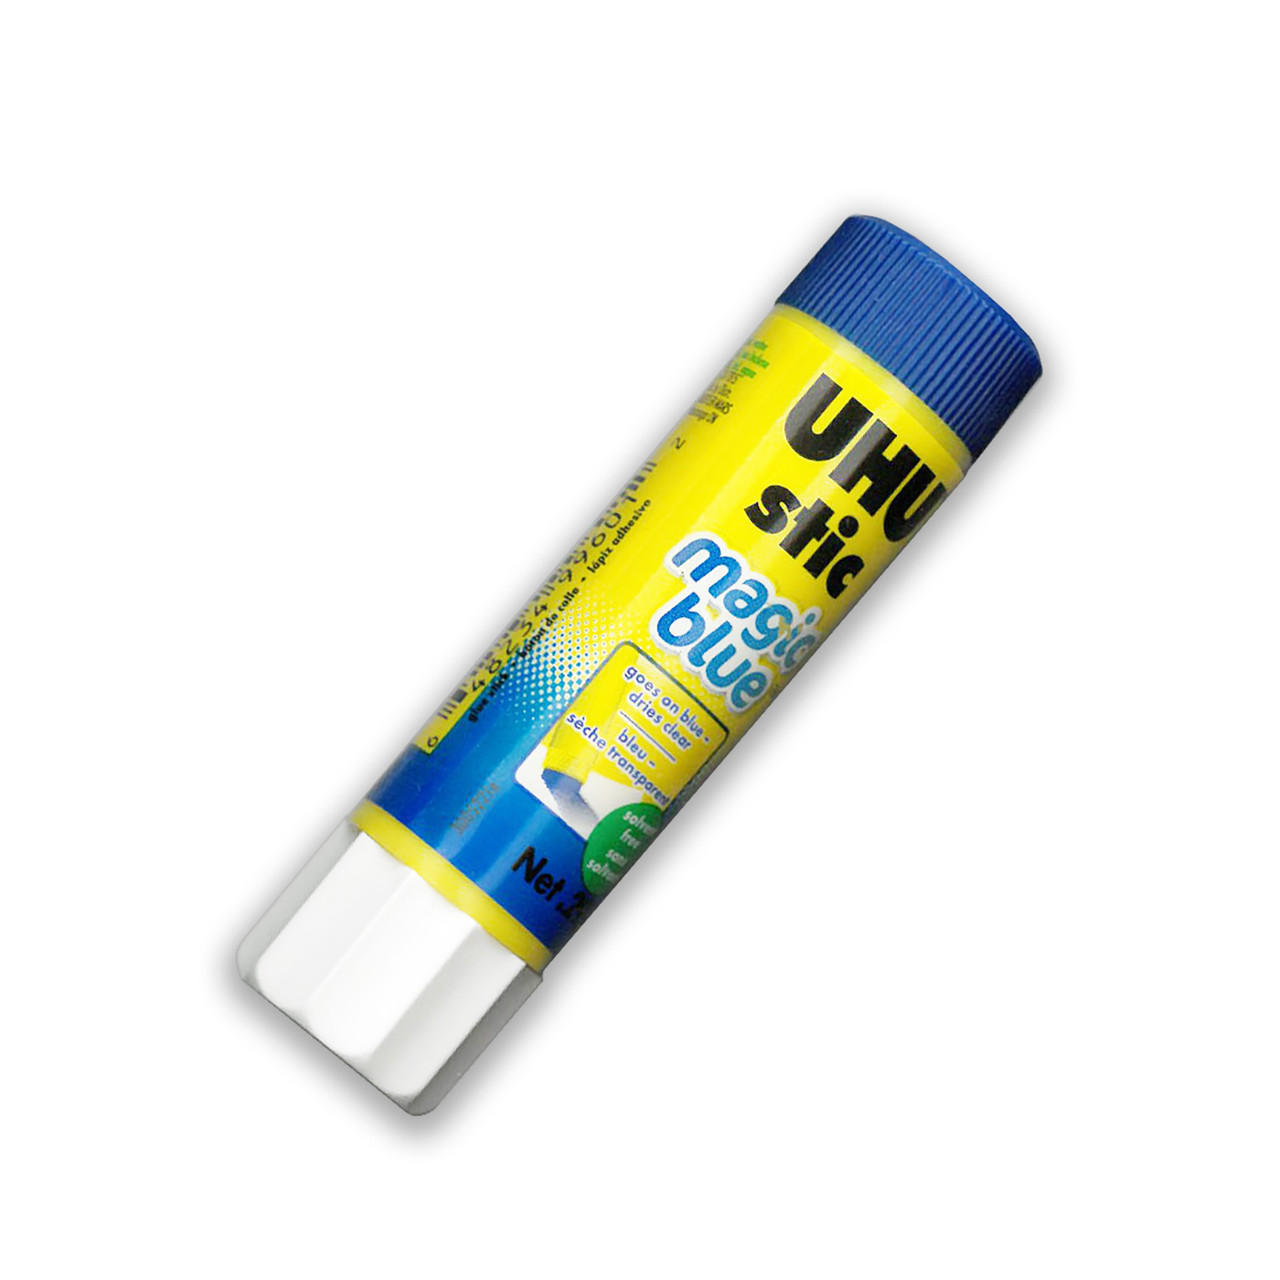  UHU Glue Stick, 1.41 oz., White, Pack of 12 (99655) : Arts,  Crafts & Sewing